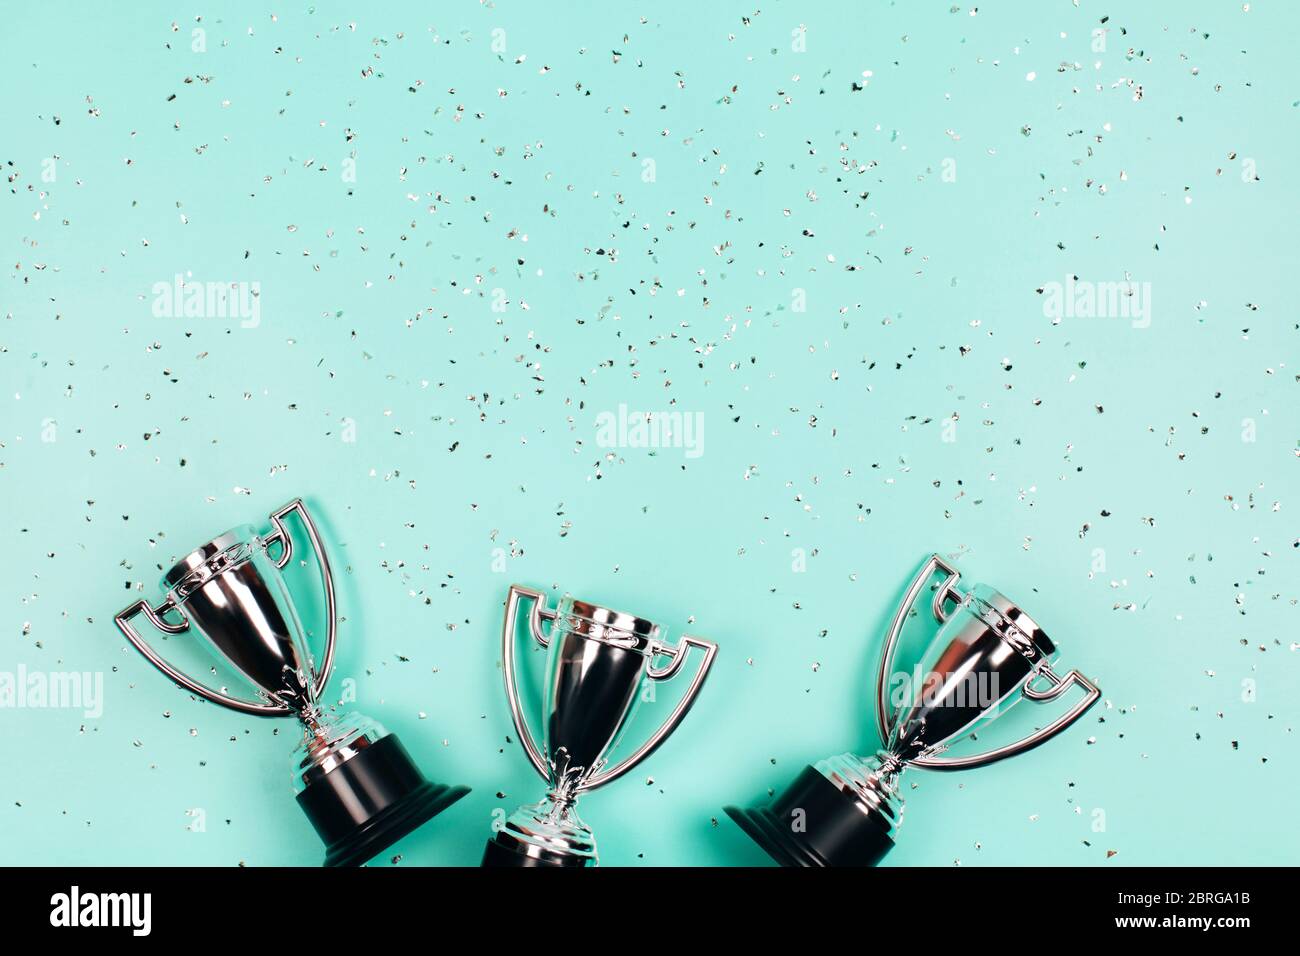 Coupes gagnant argent avec des sparkles sur fond menthe avec espace de copie. Concept festif. Style de pose à plat. Banque D'Images